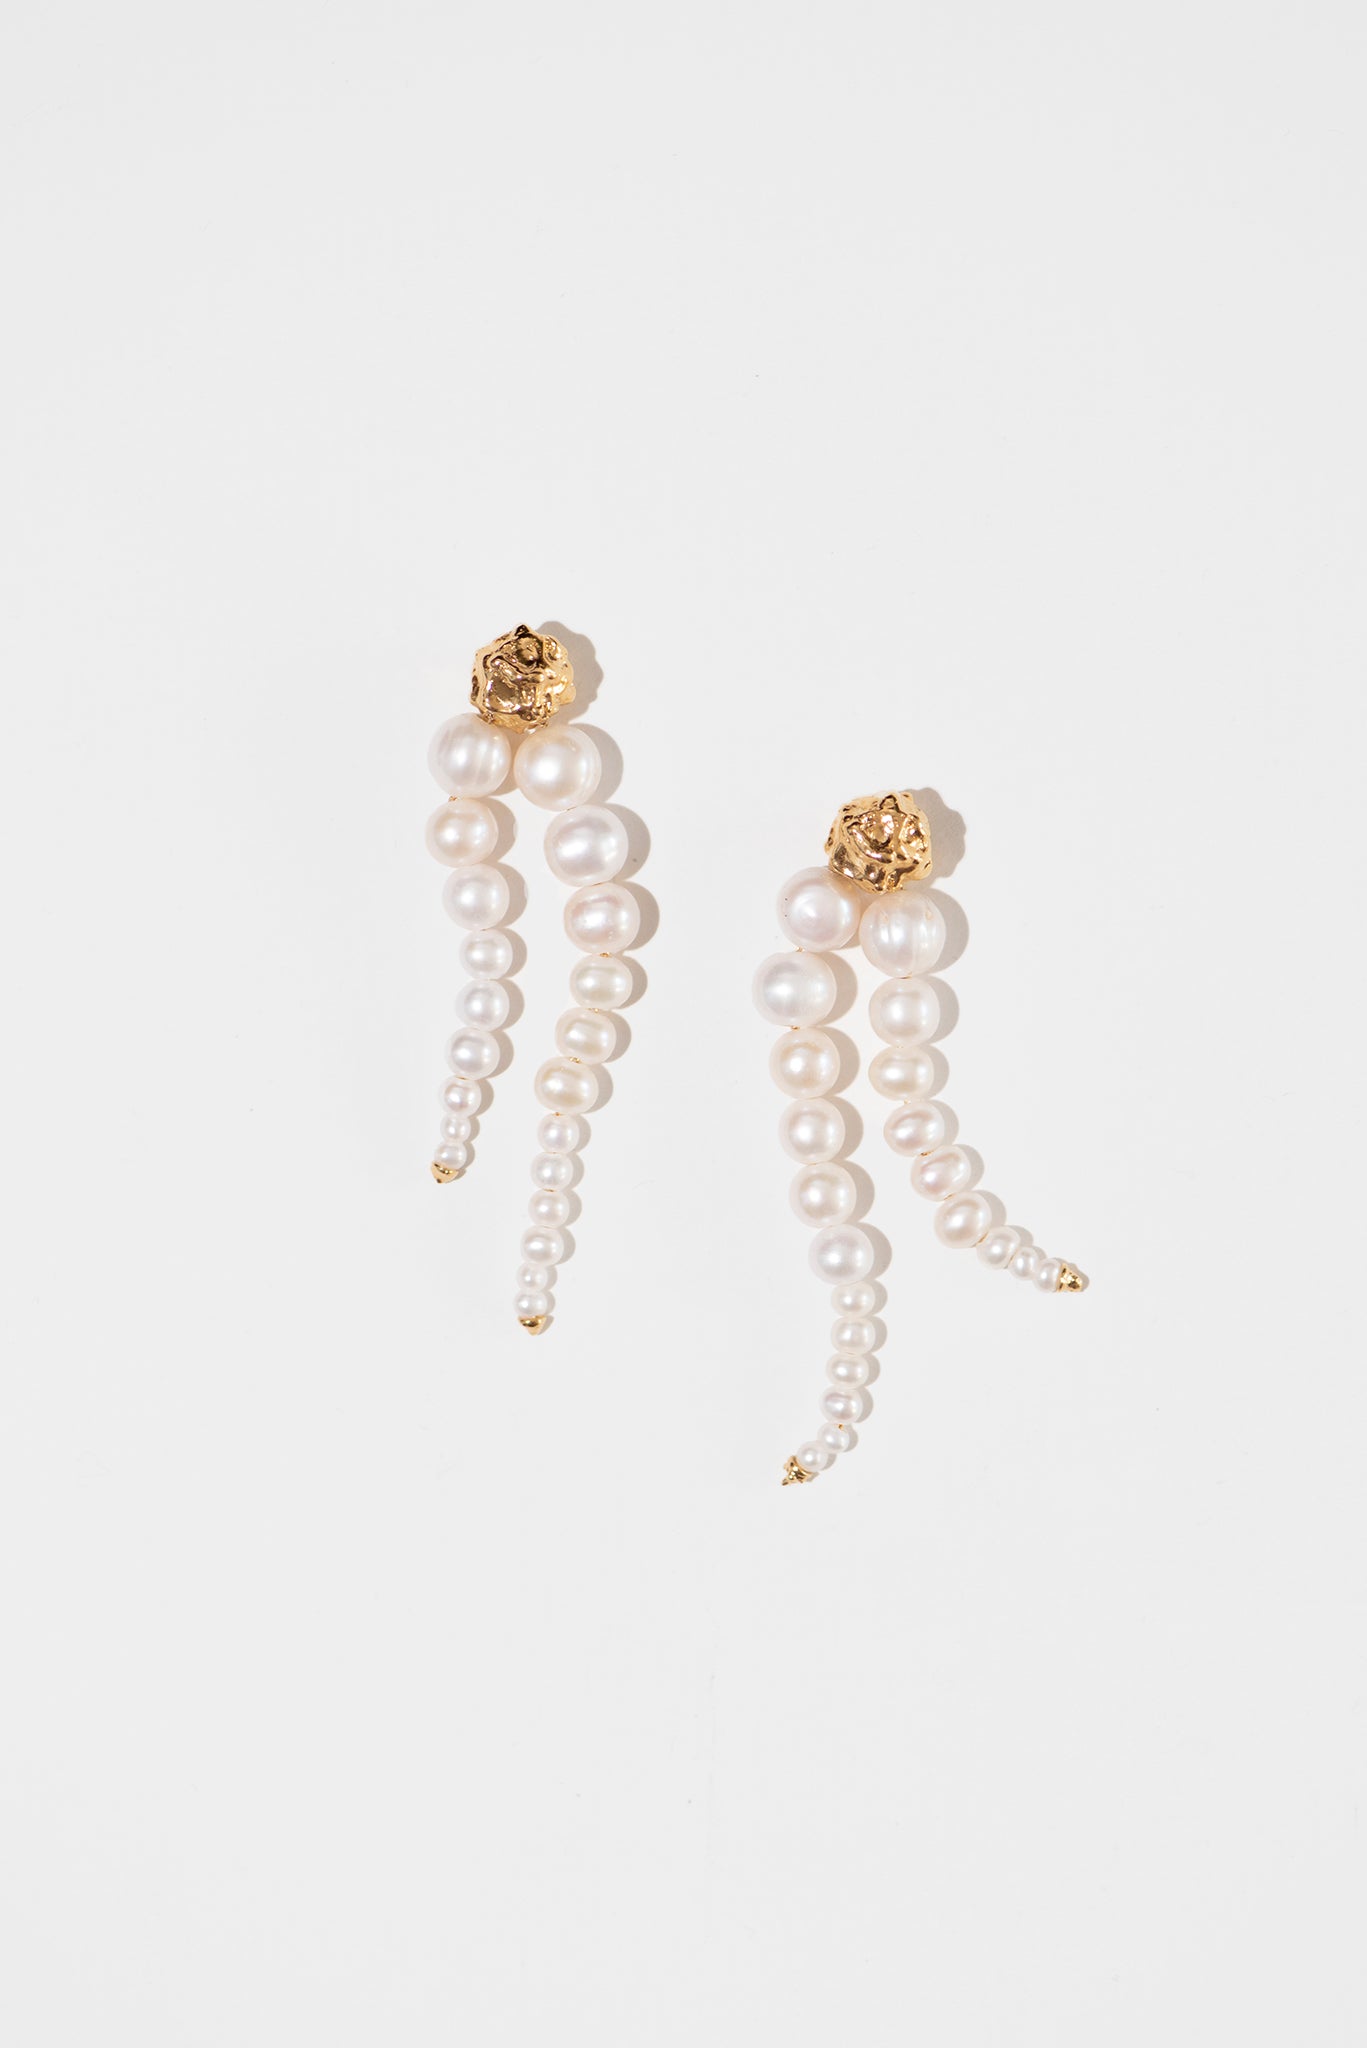 The-Pearl-Pearl-Earring-Les-Meres-1.jpg